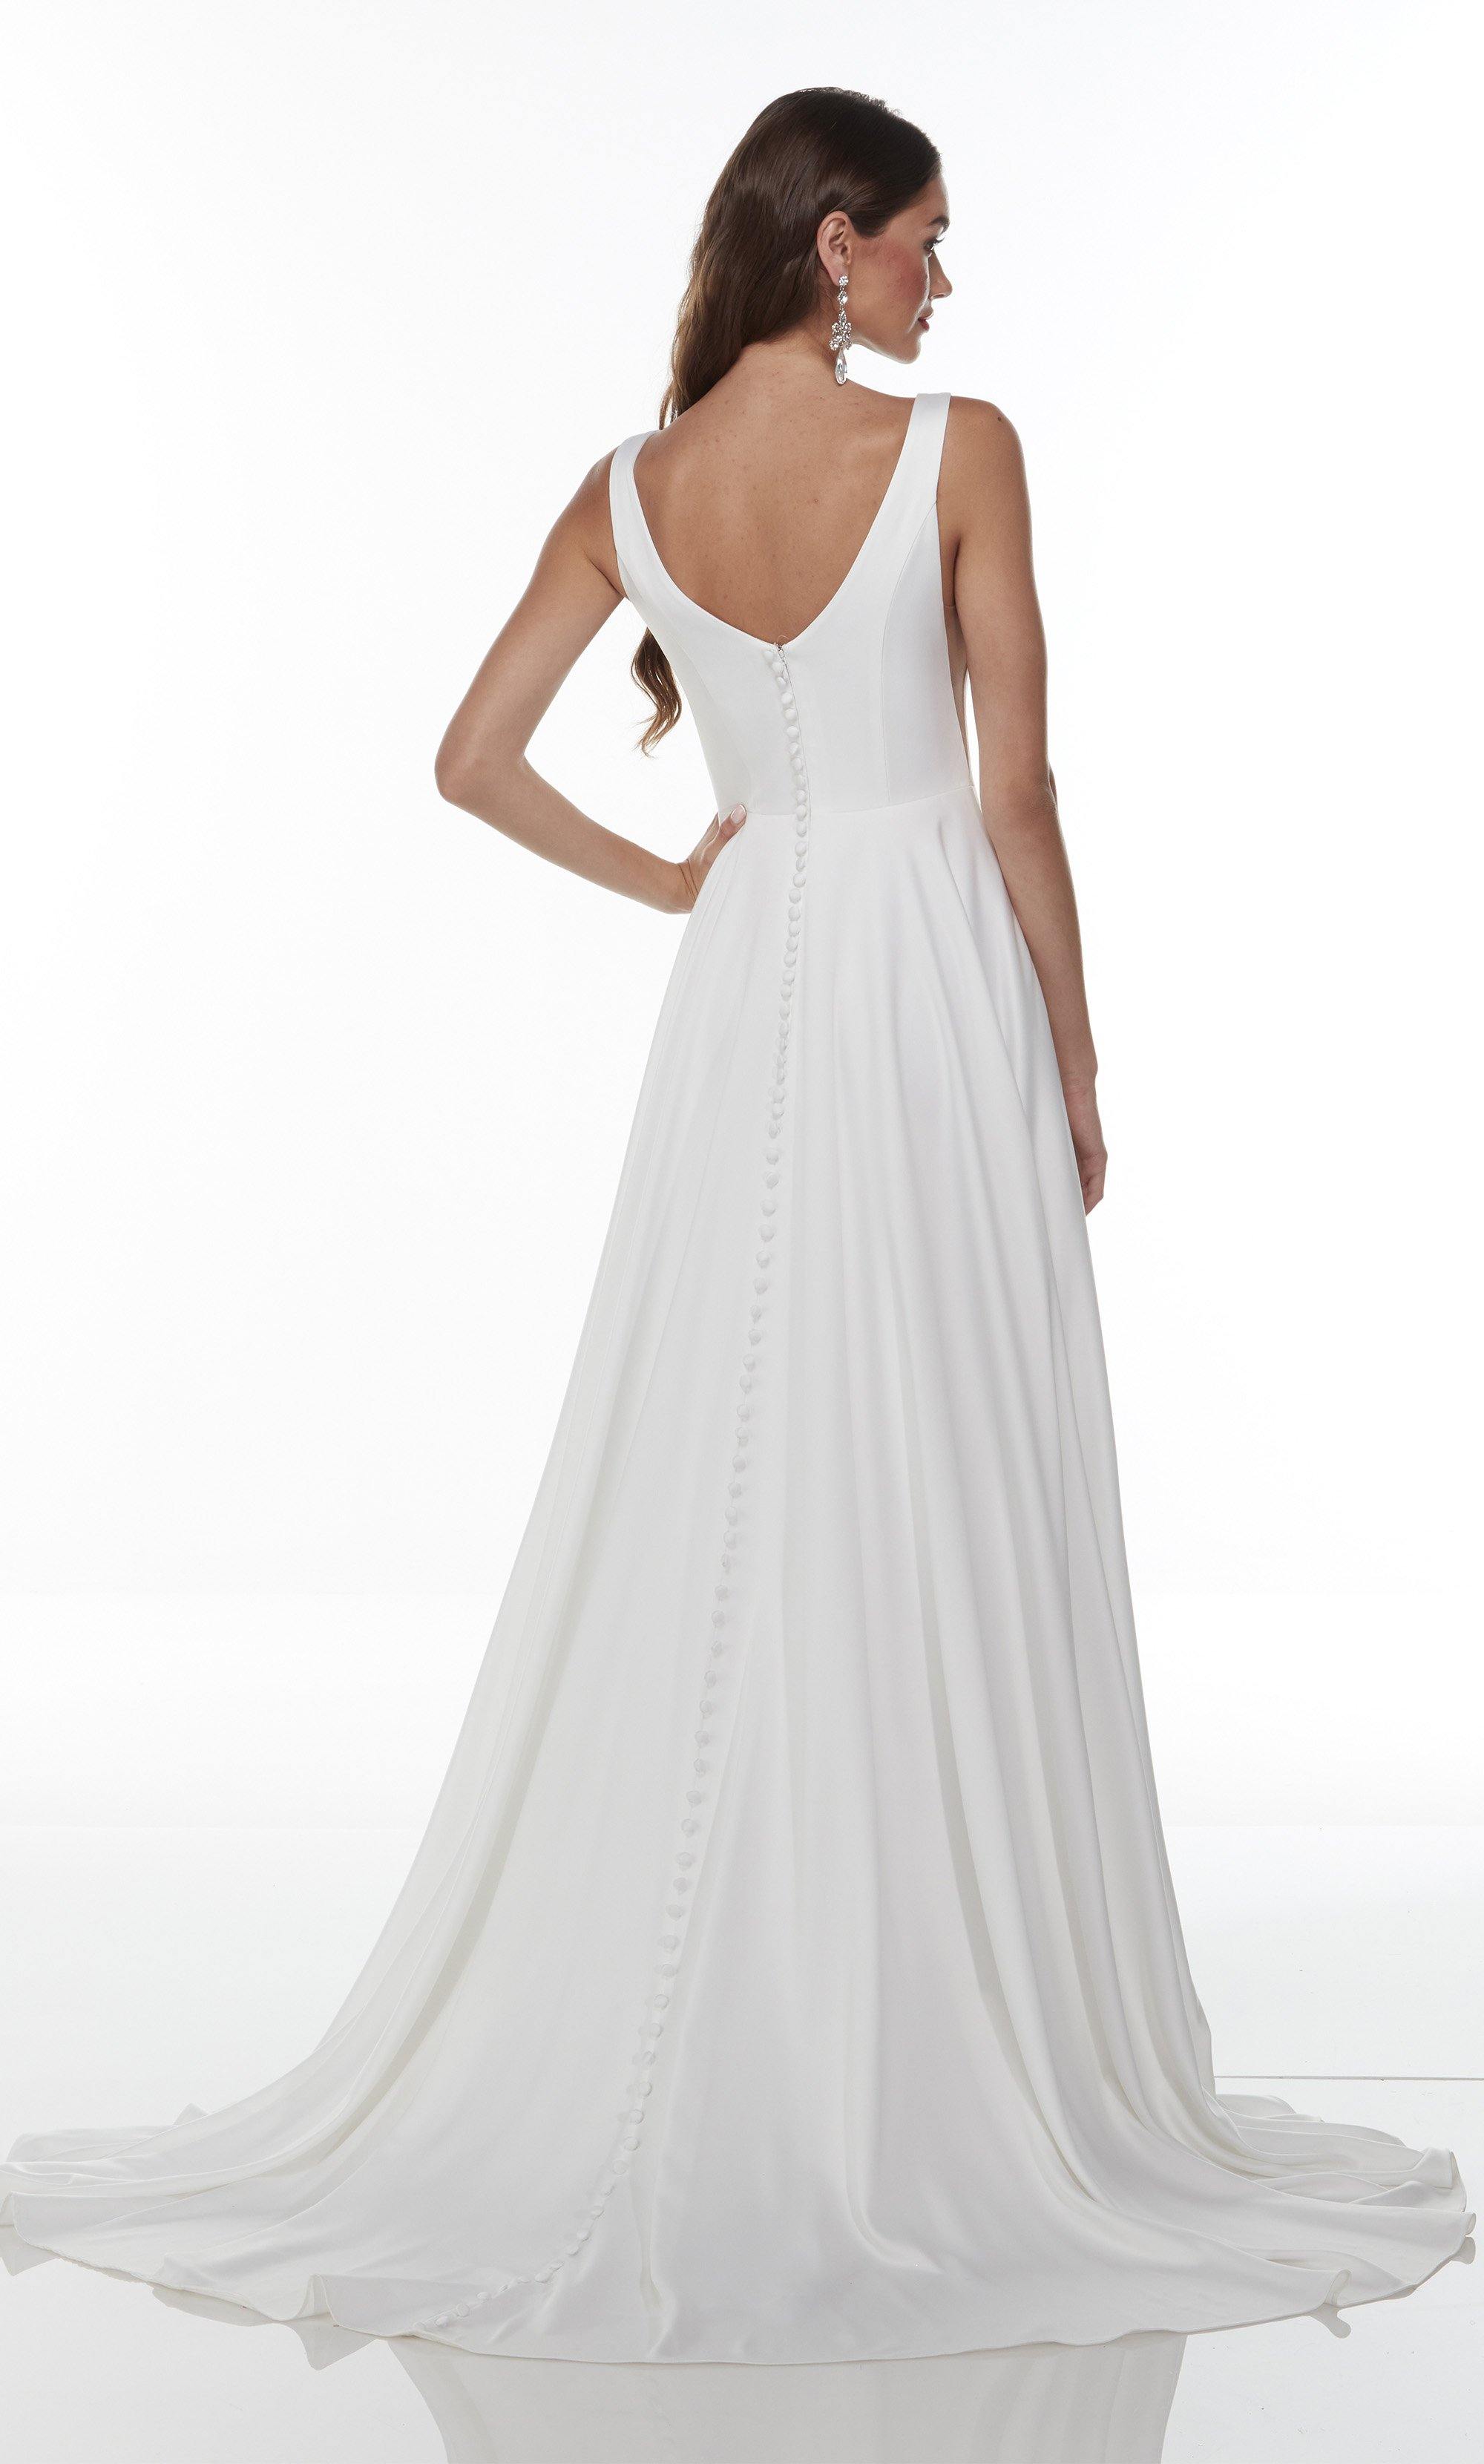 Formal Dress: 7053. Long Flowy Wedding Dress, Bateau Neckline, A-line